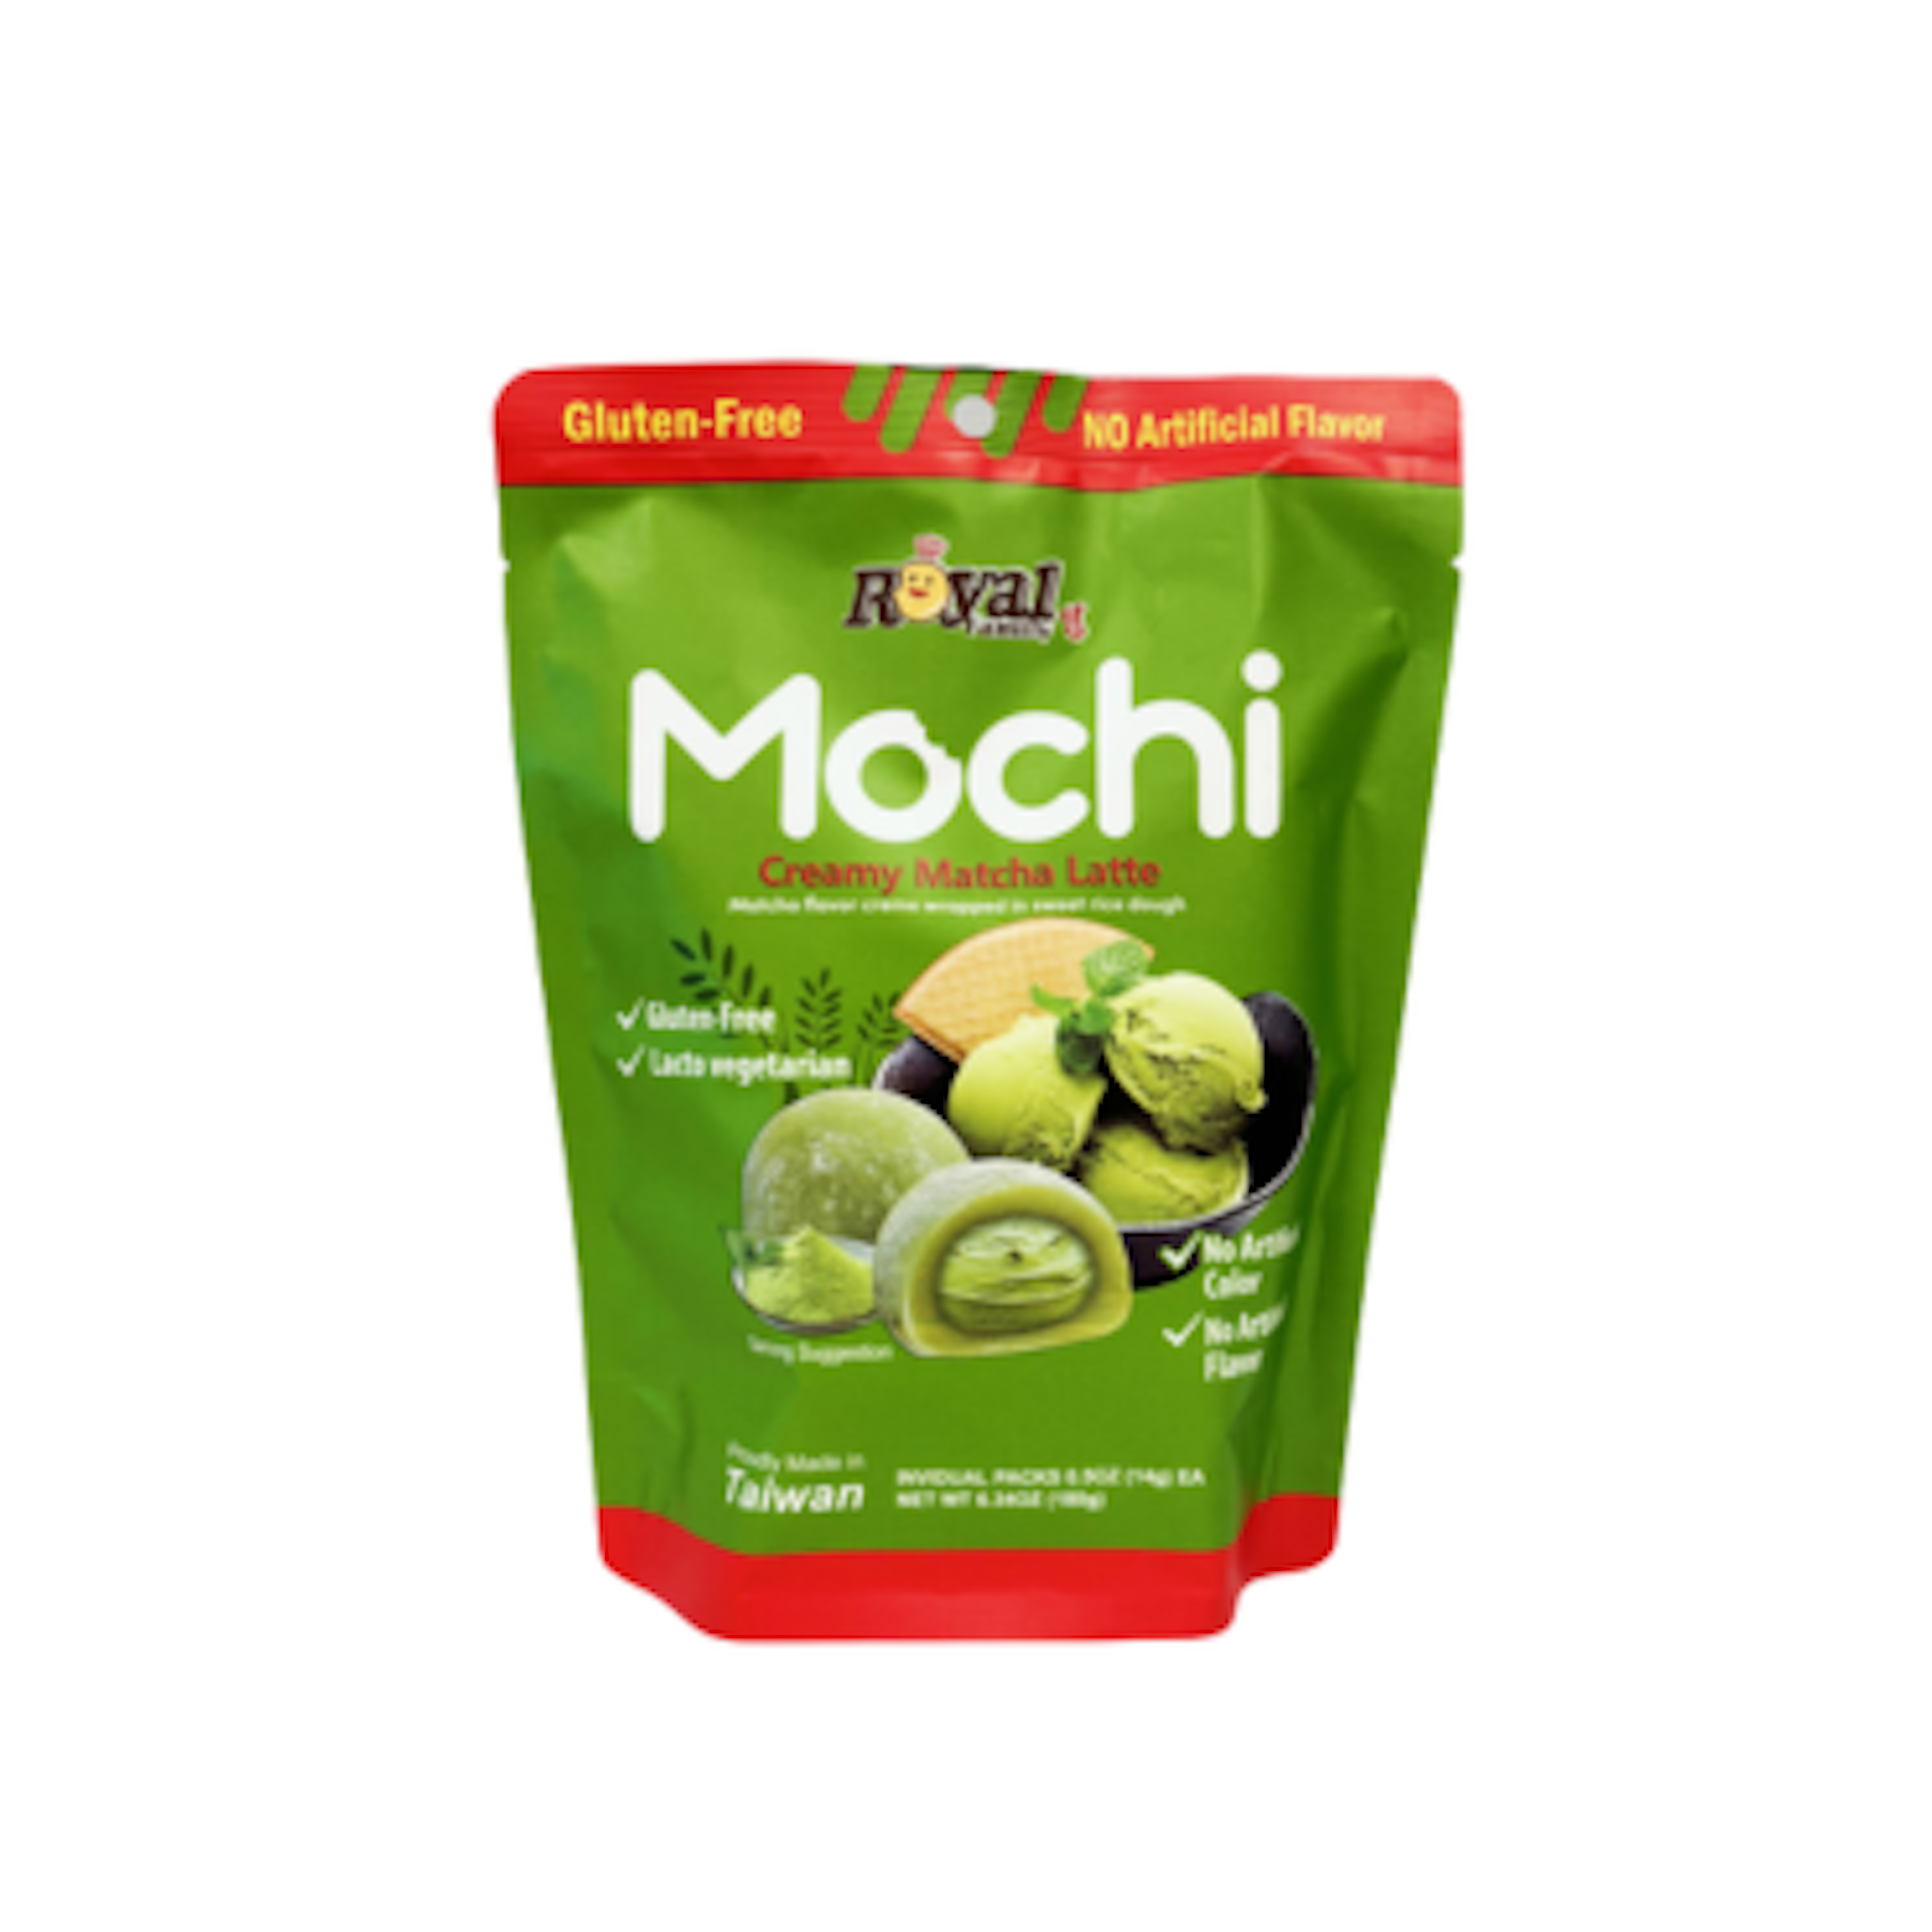 Royal Family Mochi Creamy Matcha Latte - Zarte Mochi ohne künstliche Zusatzstoffe, 180g